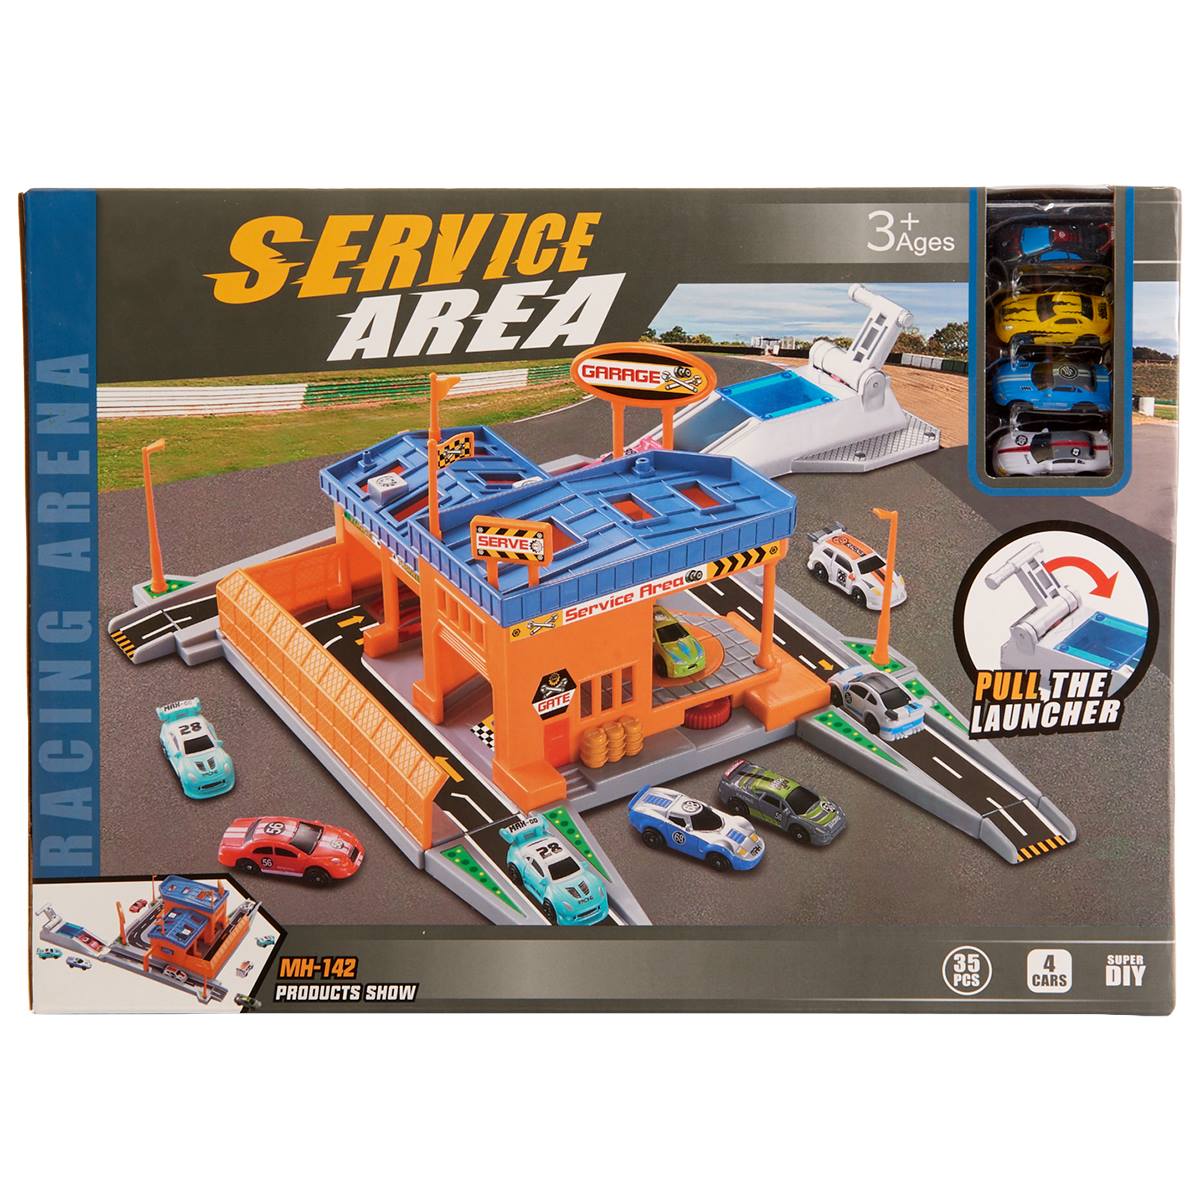 Sun-Mate Car Service Area Playset